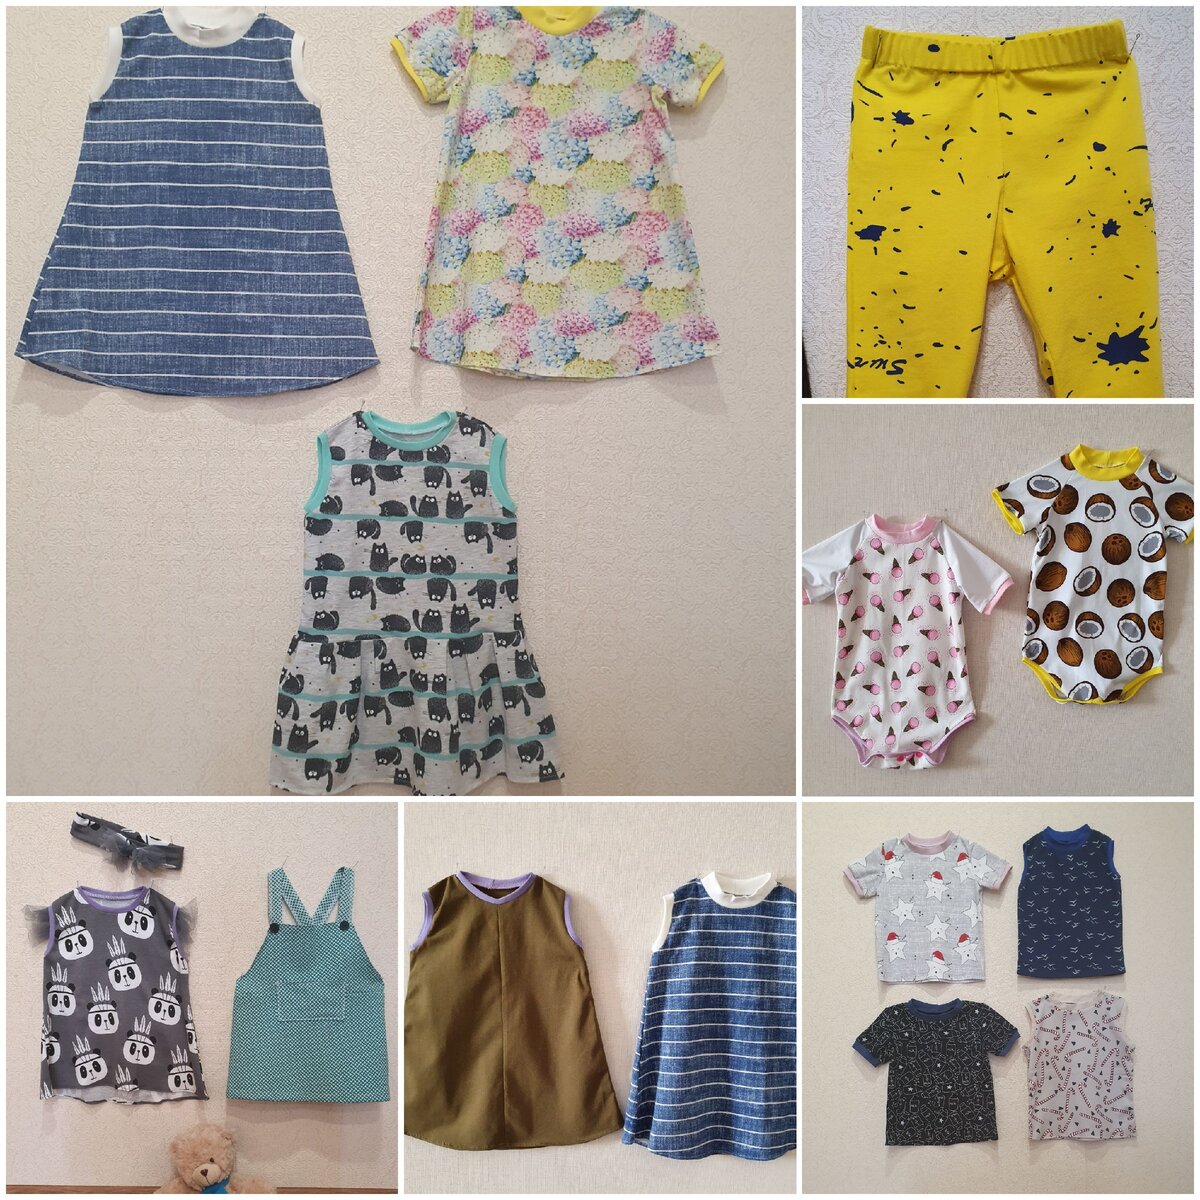 [Шитье] Конструирование, моделирование и пошив детской одежды [Grasser]